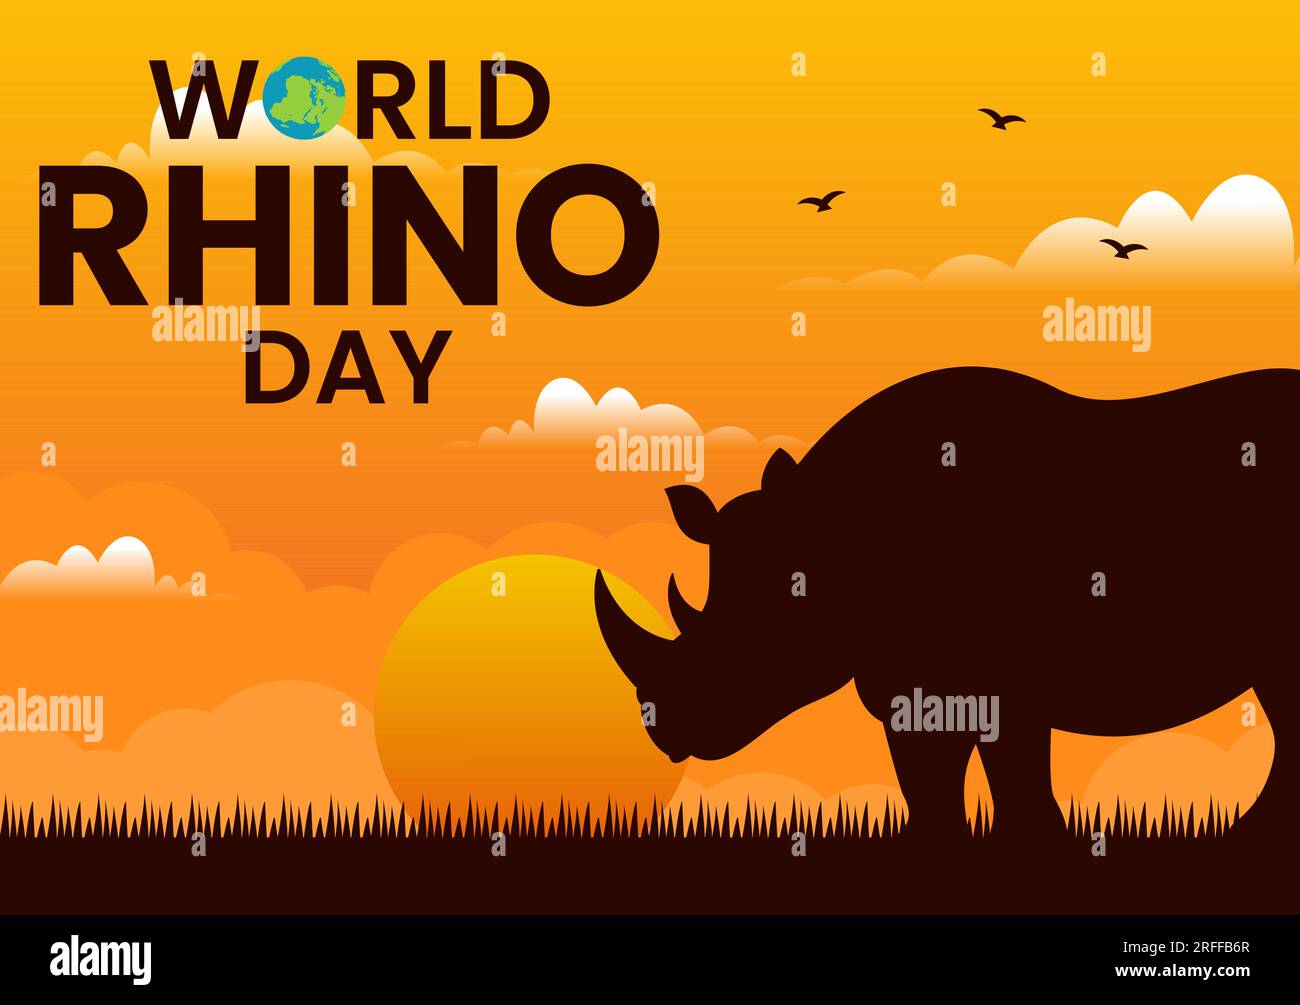 World Rhino Day Vector Illustration am 22. September für Liebhaber und Verteidiger von Nashörnern oder Tierschutz in flachen, handgezeichneten Cartoon-Vorlagen Stock Vektor